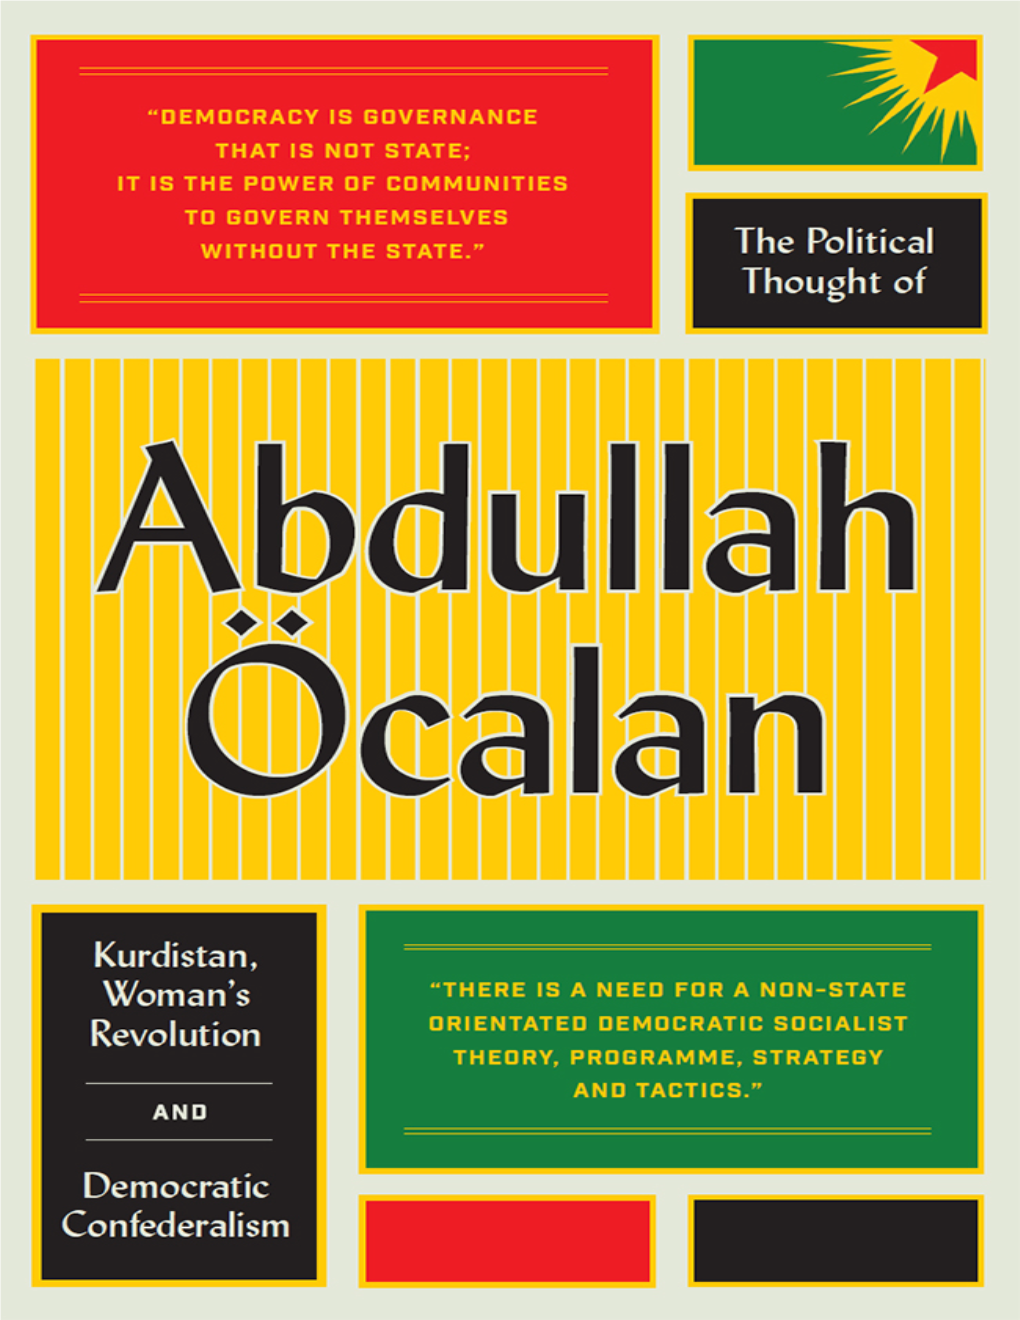 The Political Thought of Abdullah Öcalan the Political Thought of Abdullah Öcalan